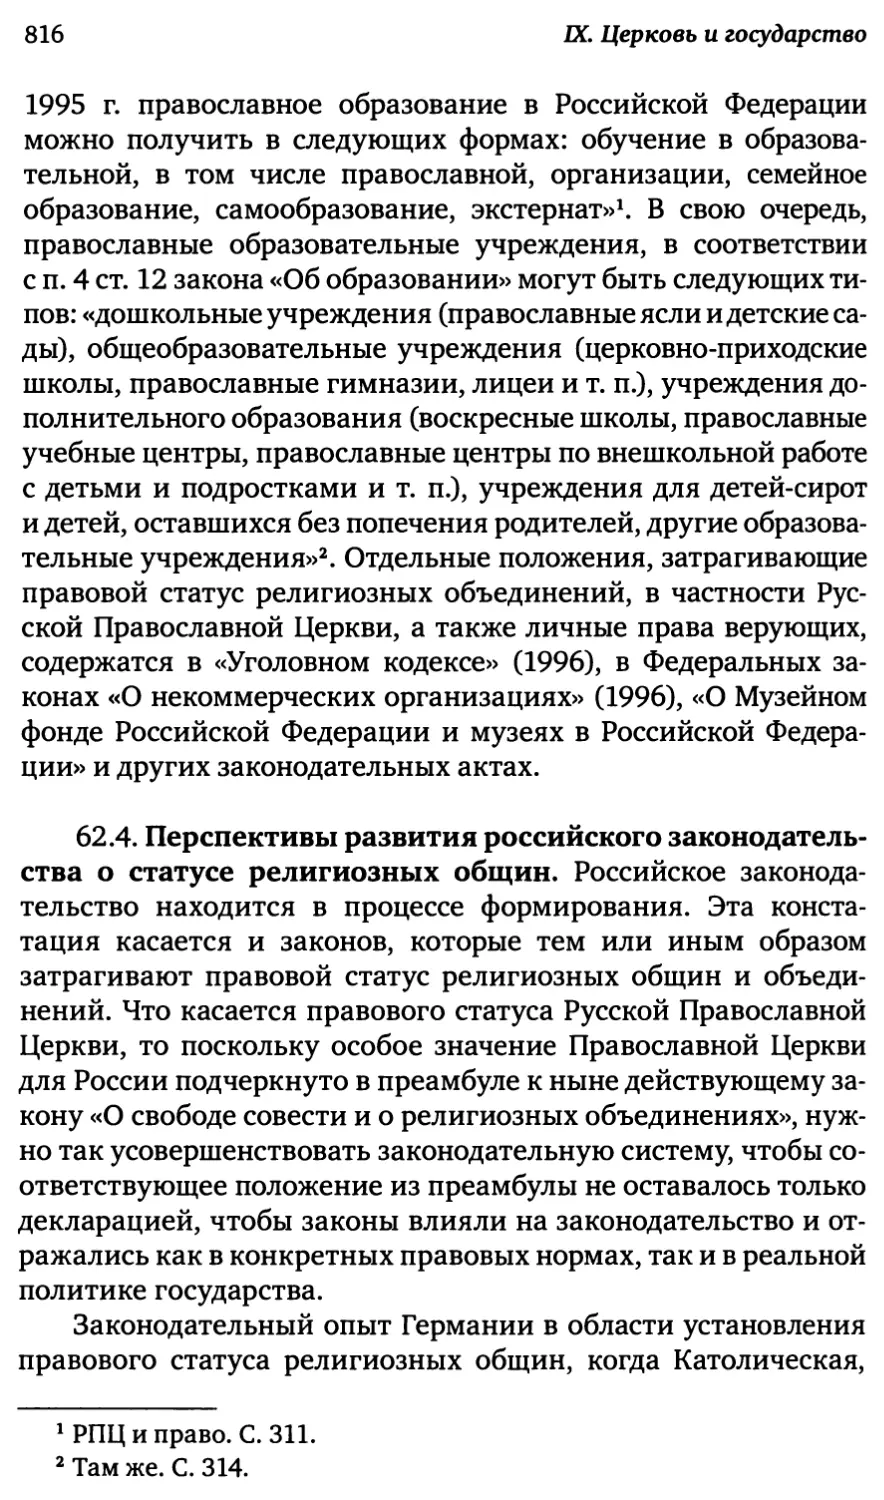 62.4. Перспективы развития российского законодательства о статусе религиозных общин